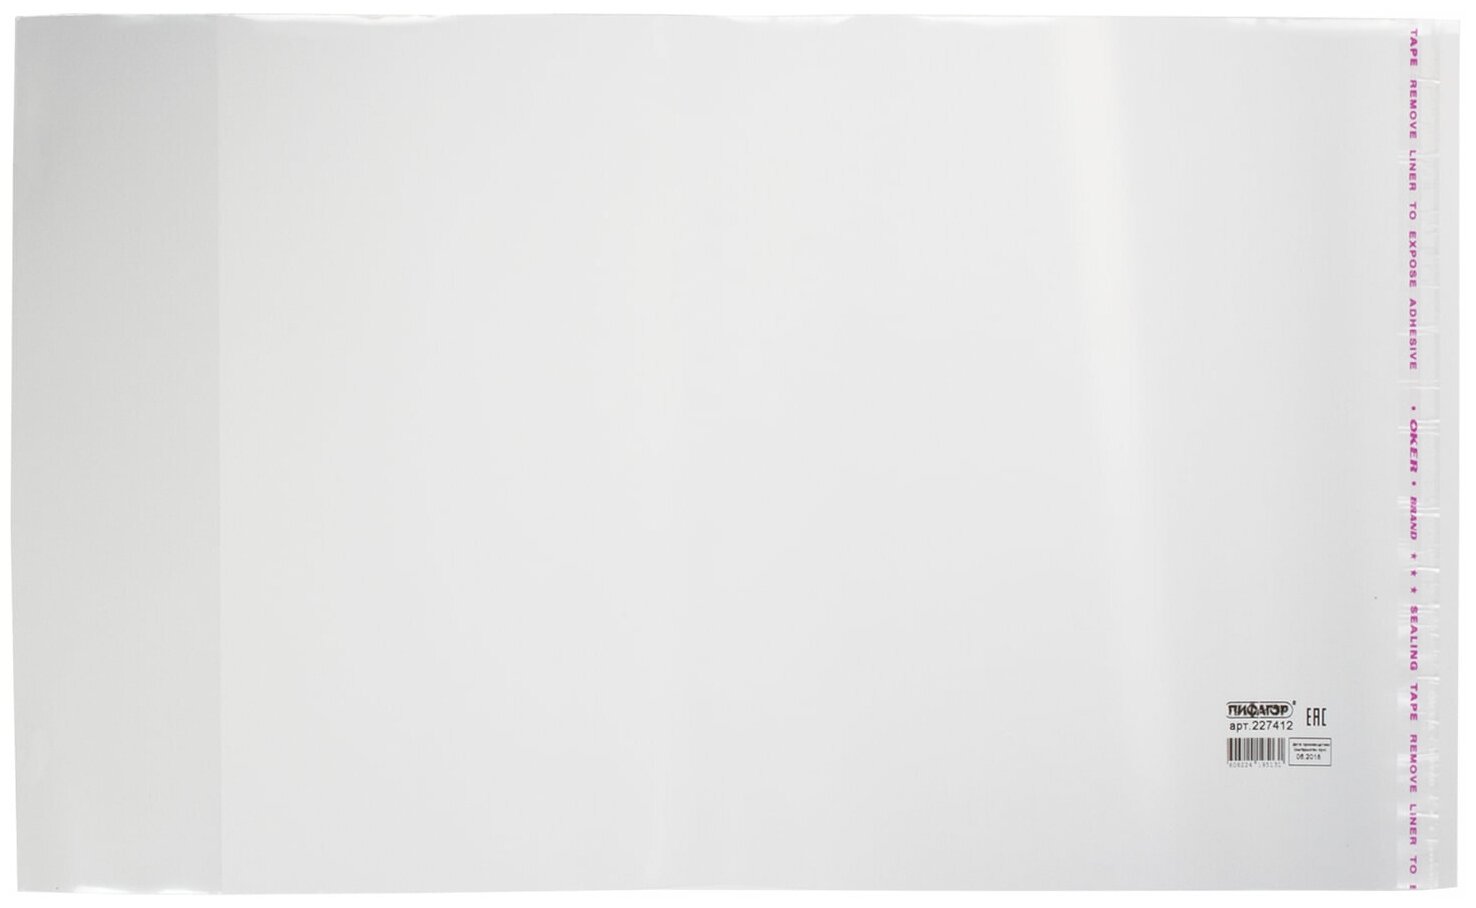 Обложка ПП для учебников старших классов пифагор, универсальная, клейкий край, 70 мкм, 230х380 мм, 227412 В комплекте: 100шт.